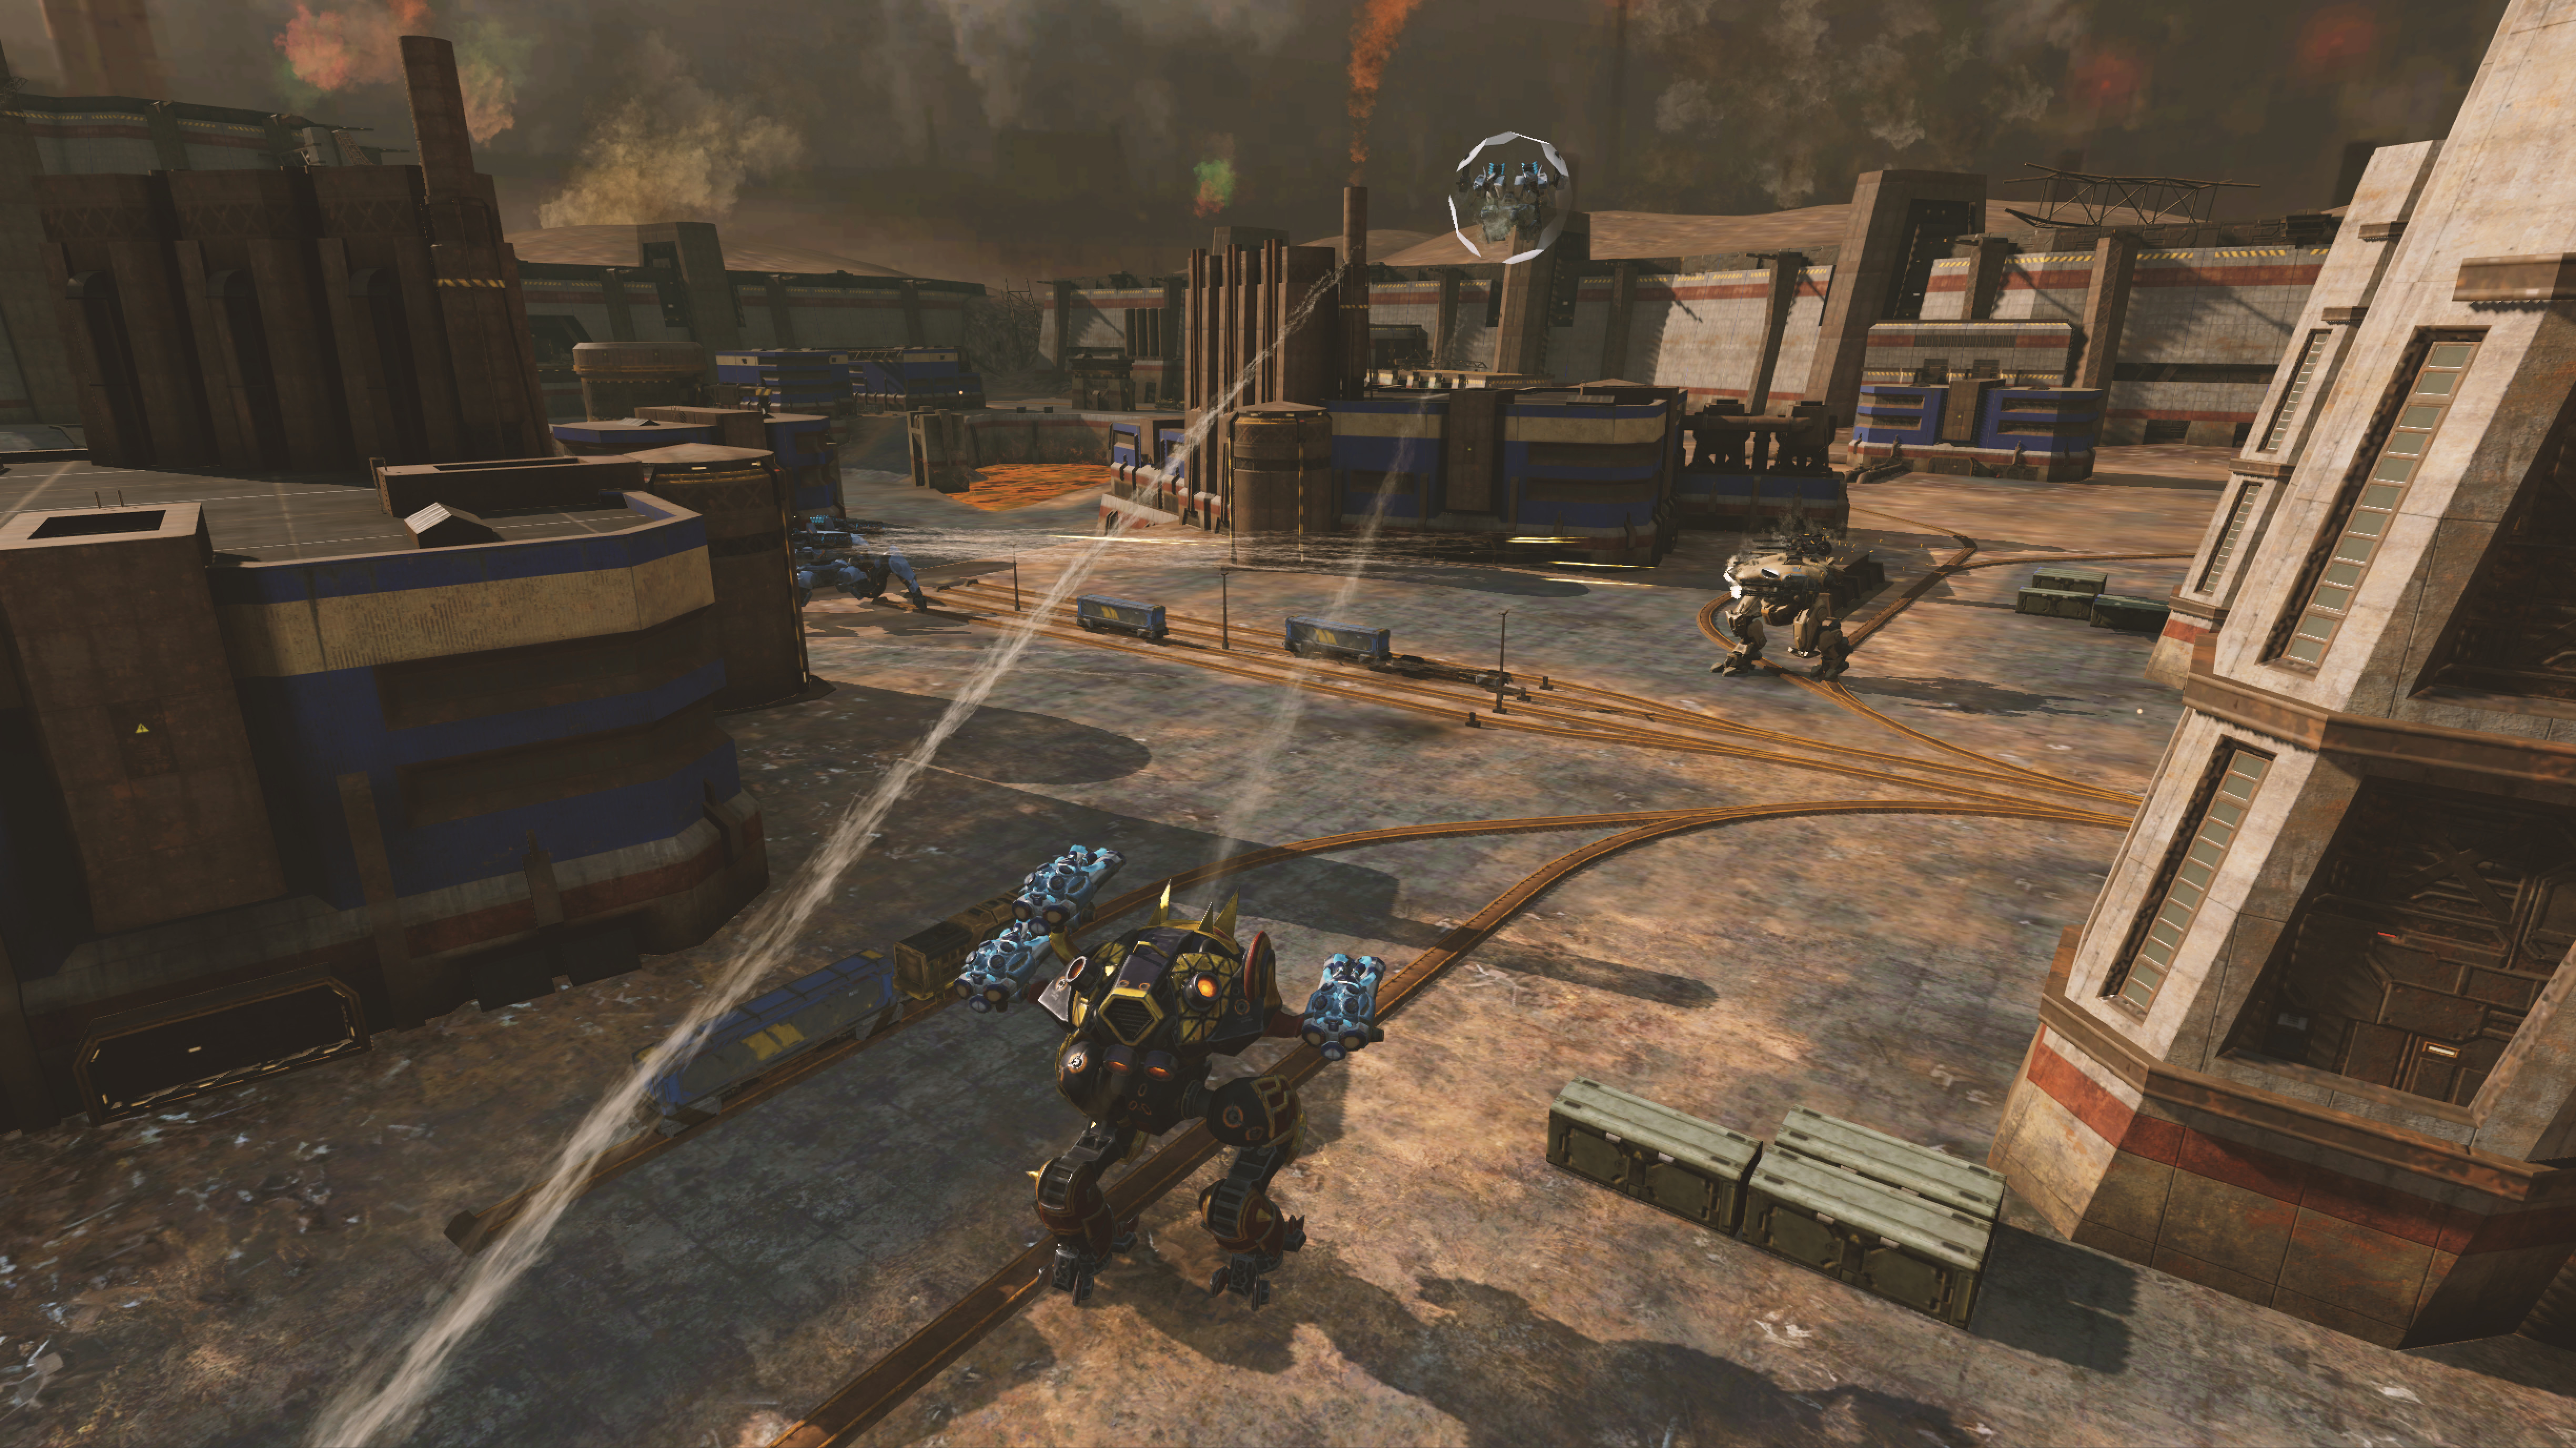 War Robots screenshot